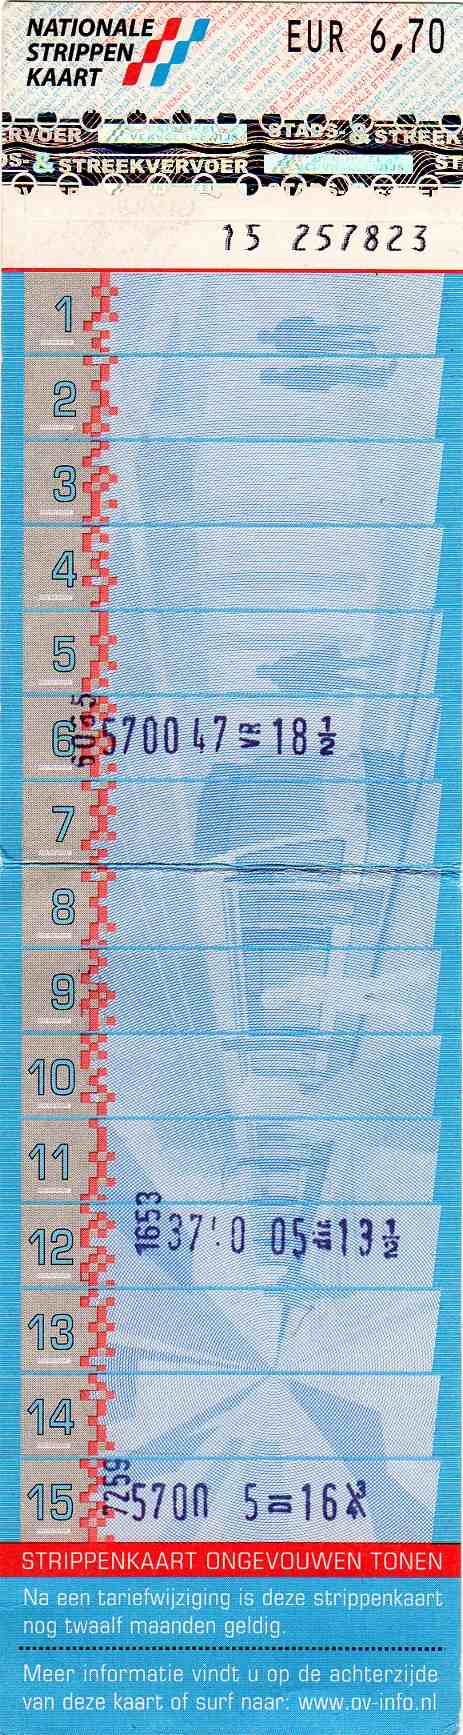 15-strip ticket